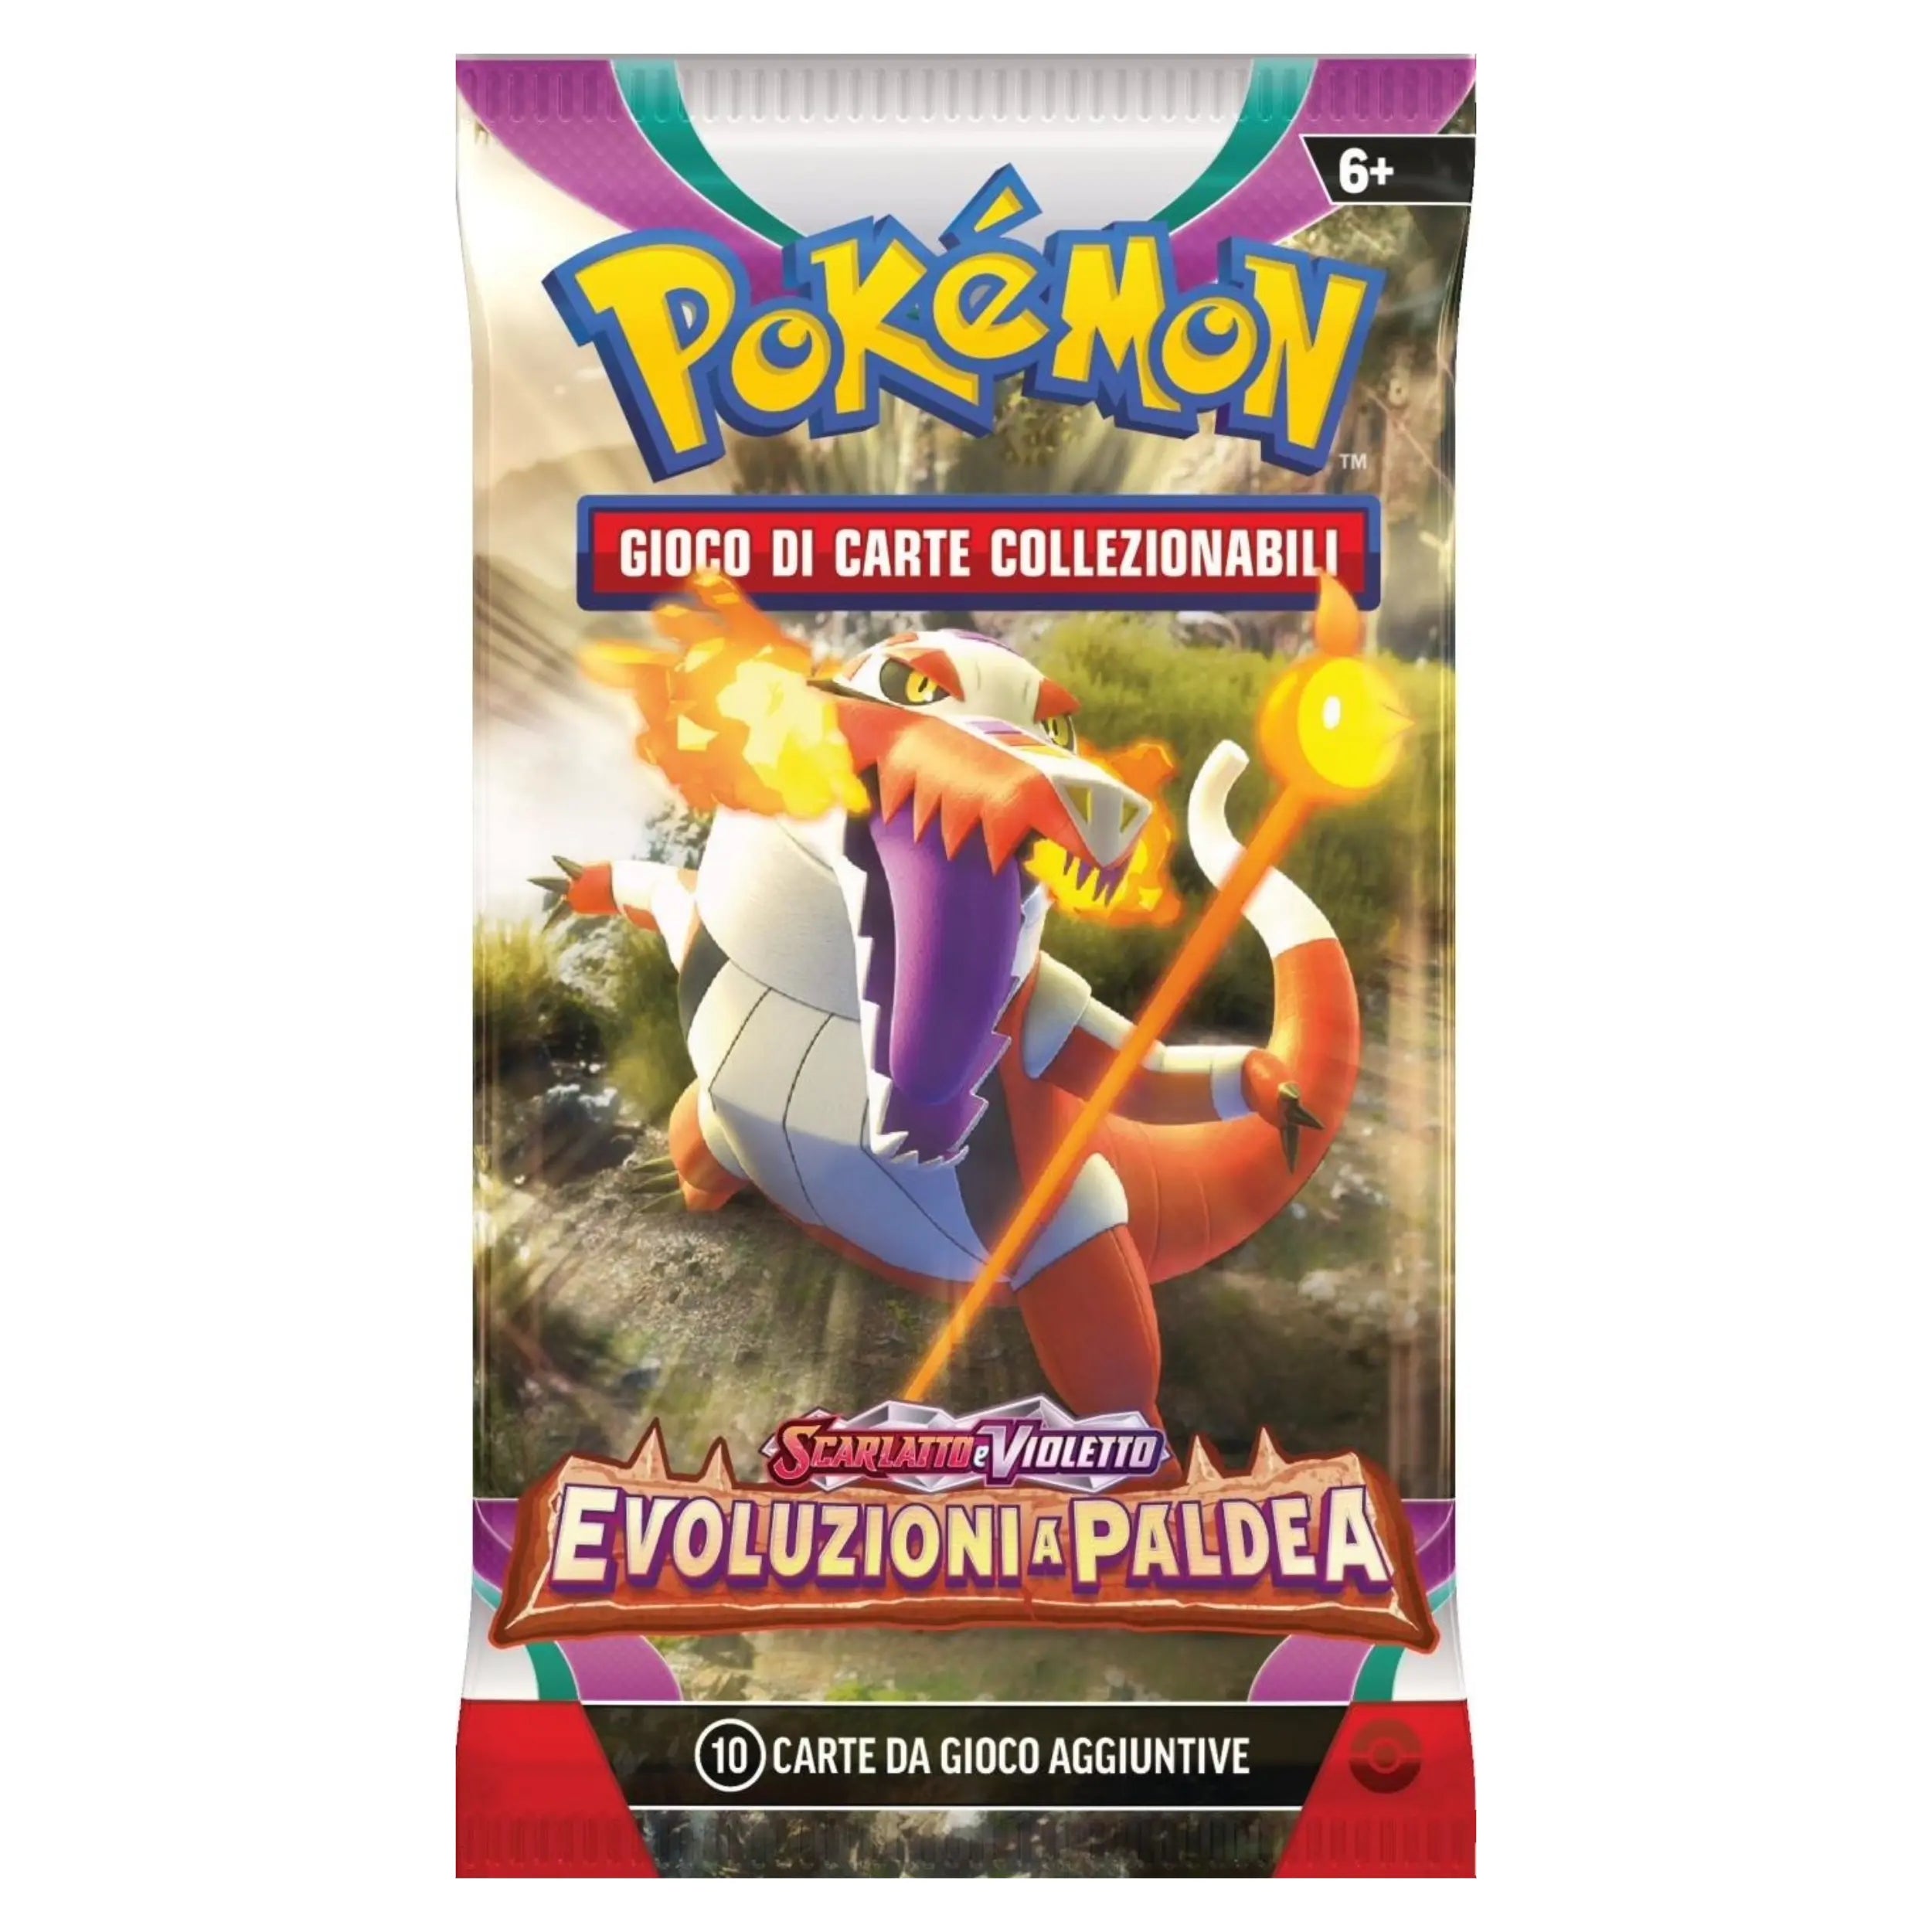 Game Vision - Pokemon Scarlatto e Violetto Evoluzioni A Paldea